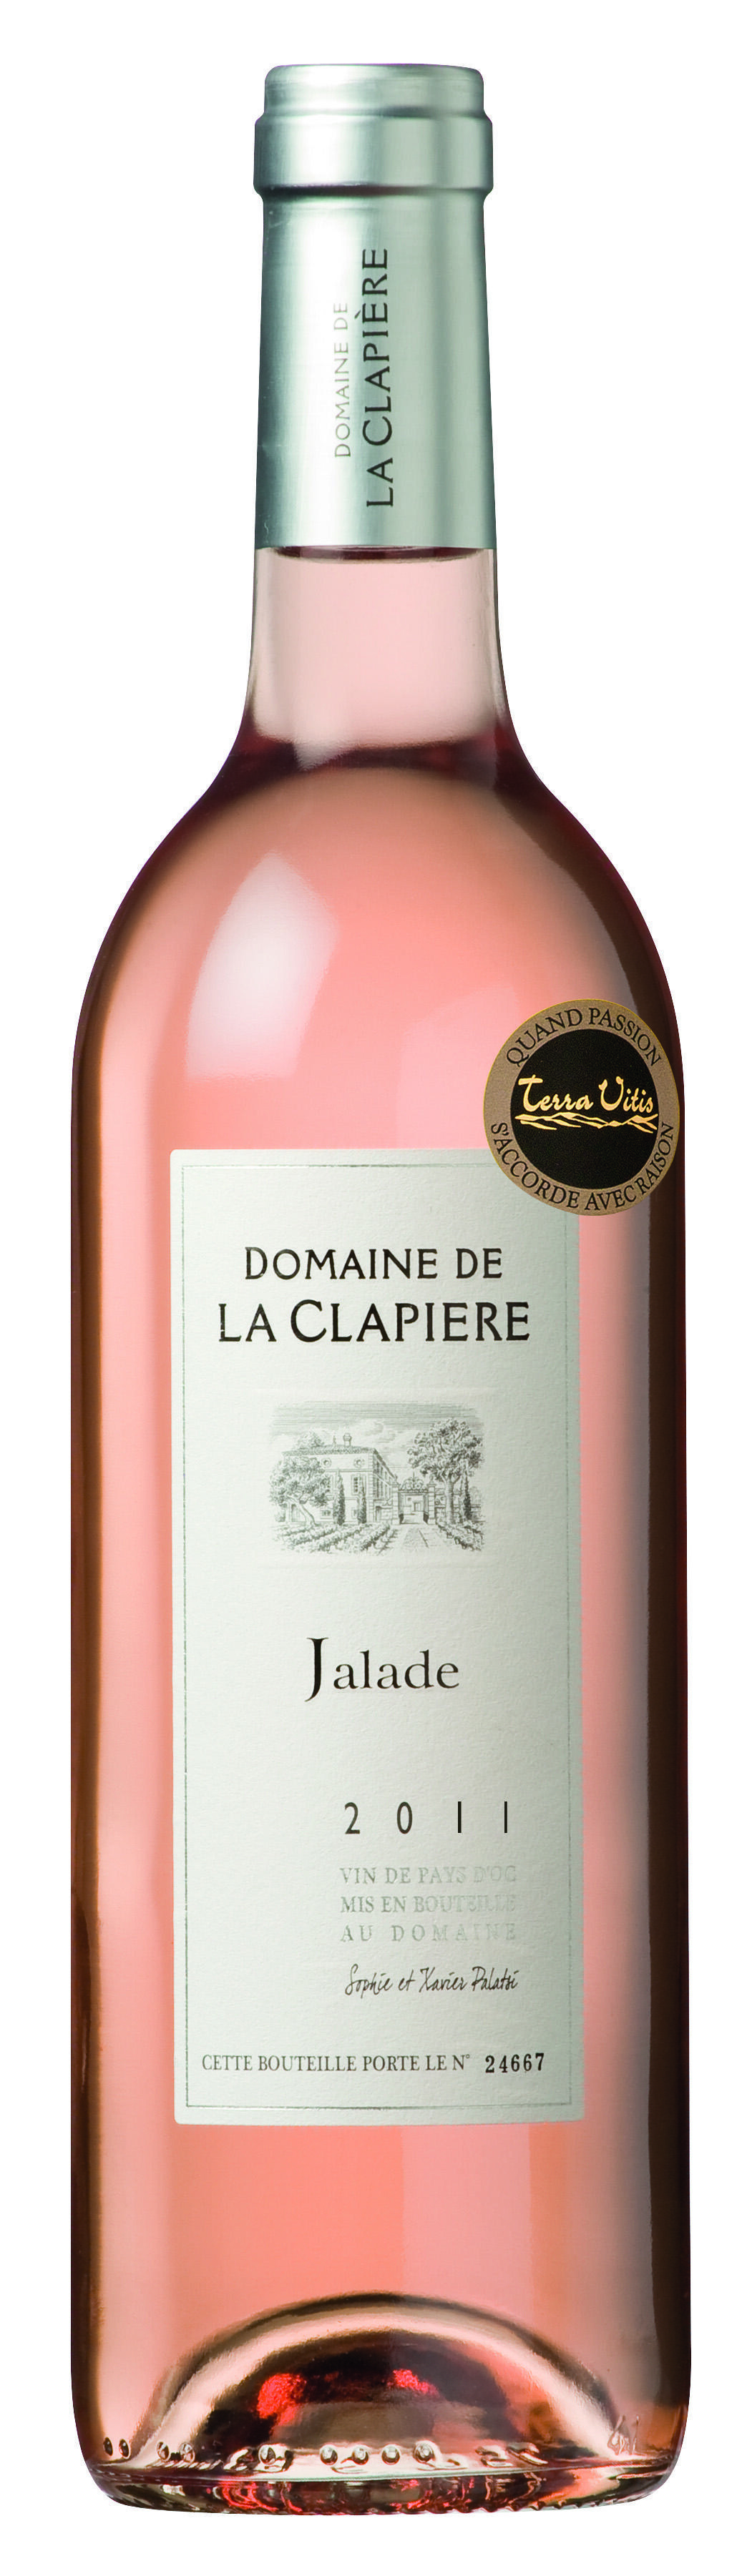 Domaine de La Clapière Jalade 75cl Vin de Pays d'Oc